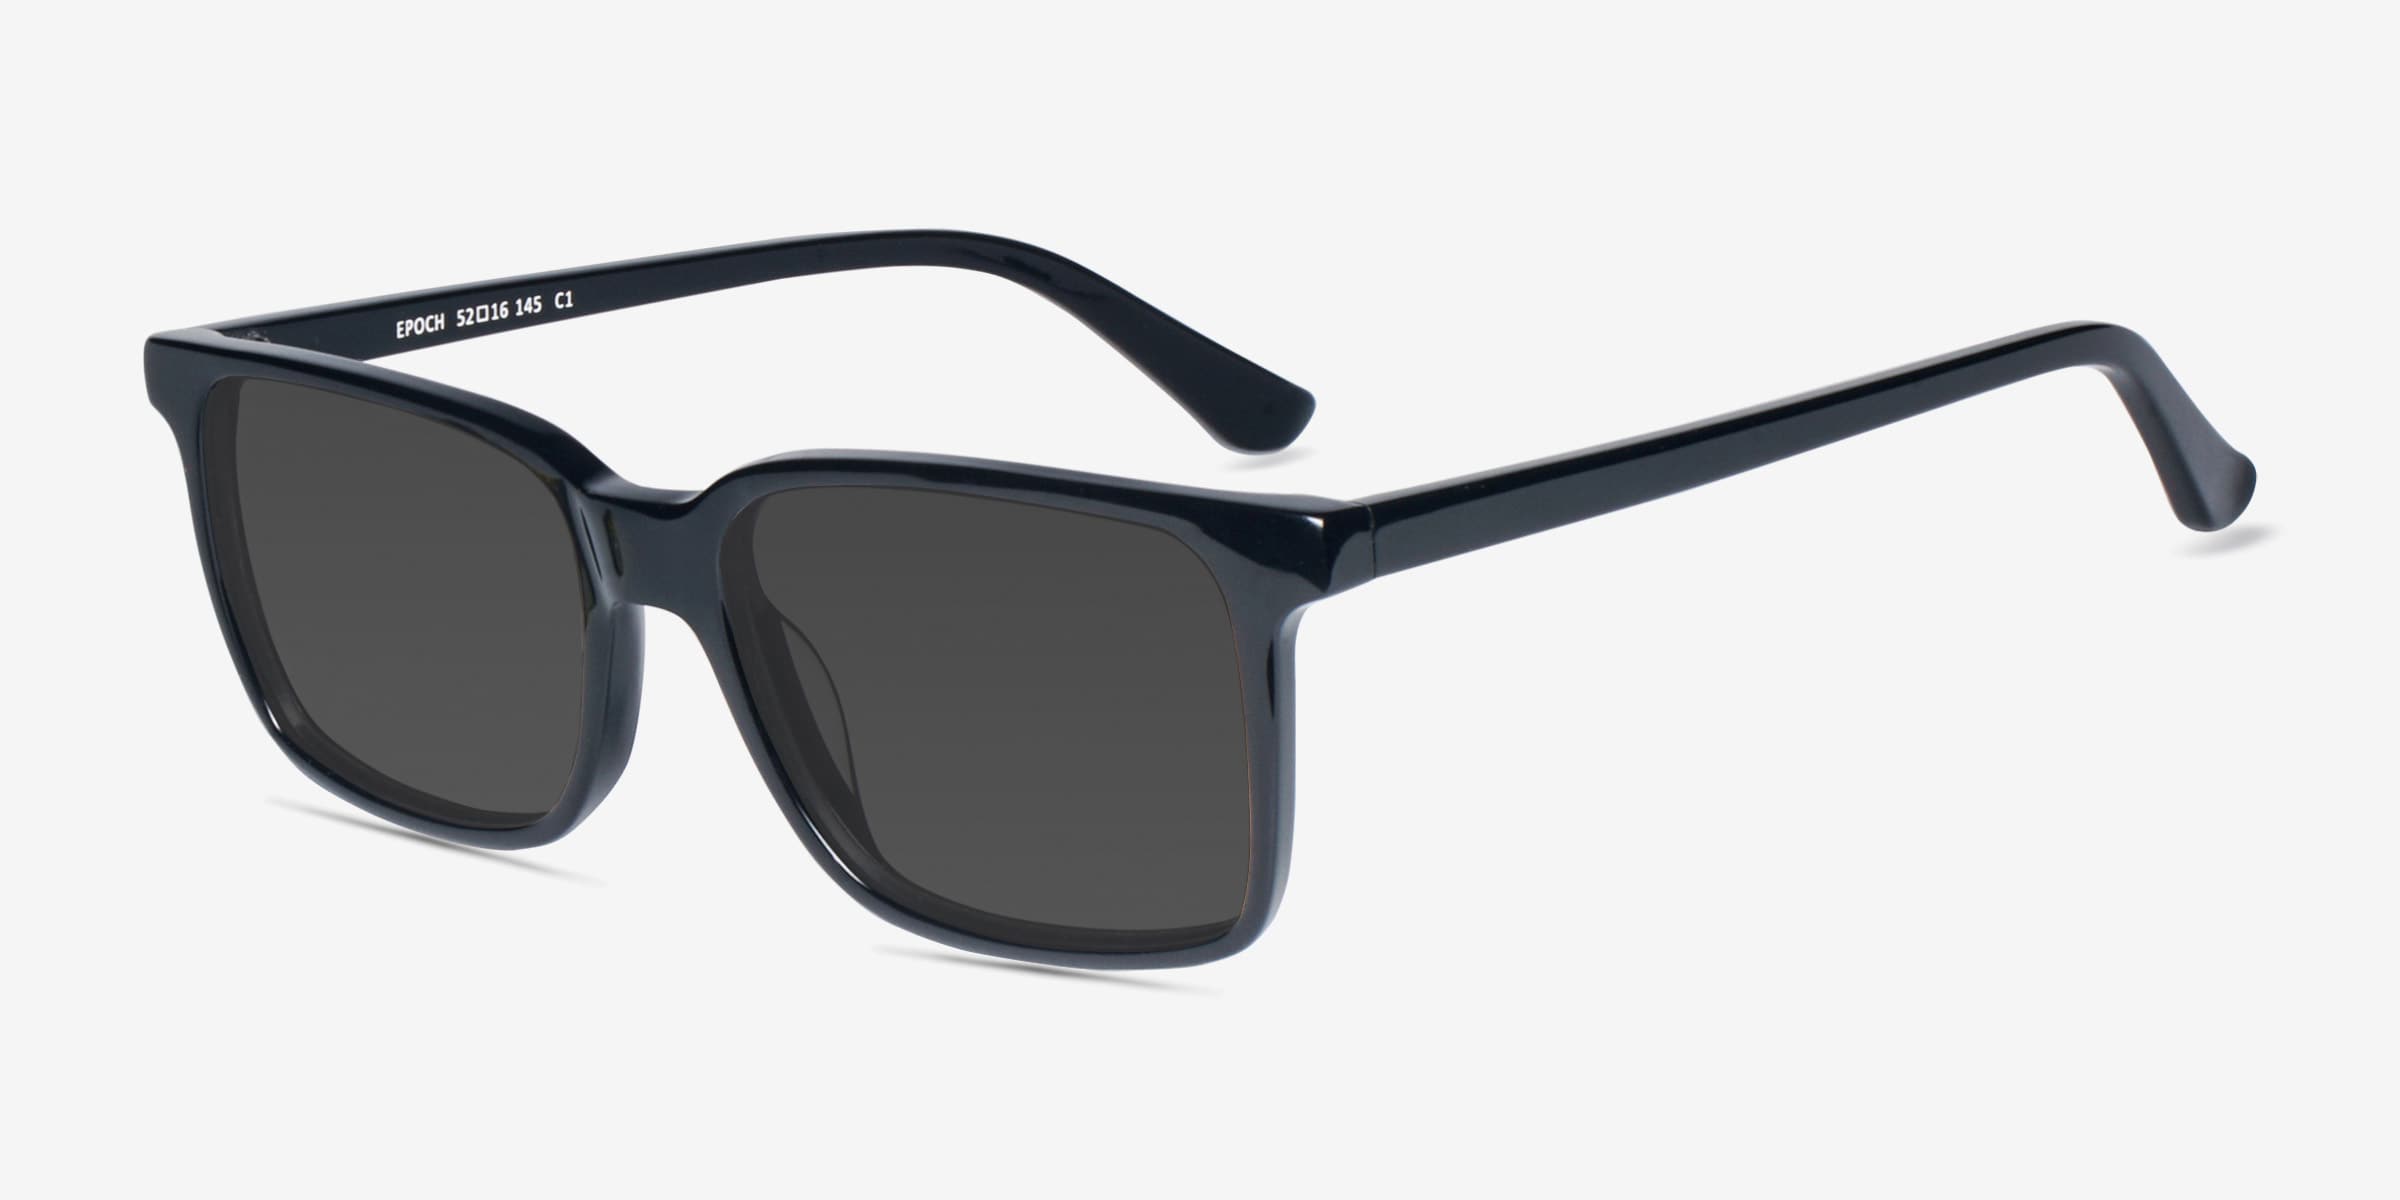 特価 Epoch ブラック好評販売中 カラー 6面小さいサングラス フレームとレンズの選択 Epoch6 Epoch Eyewear 財布 帽子 ファッション小物 Stonybankchurch Com